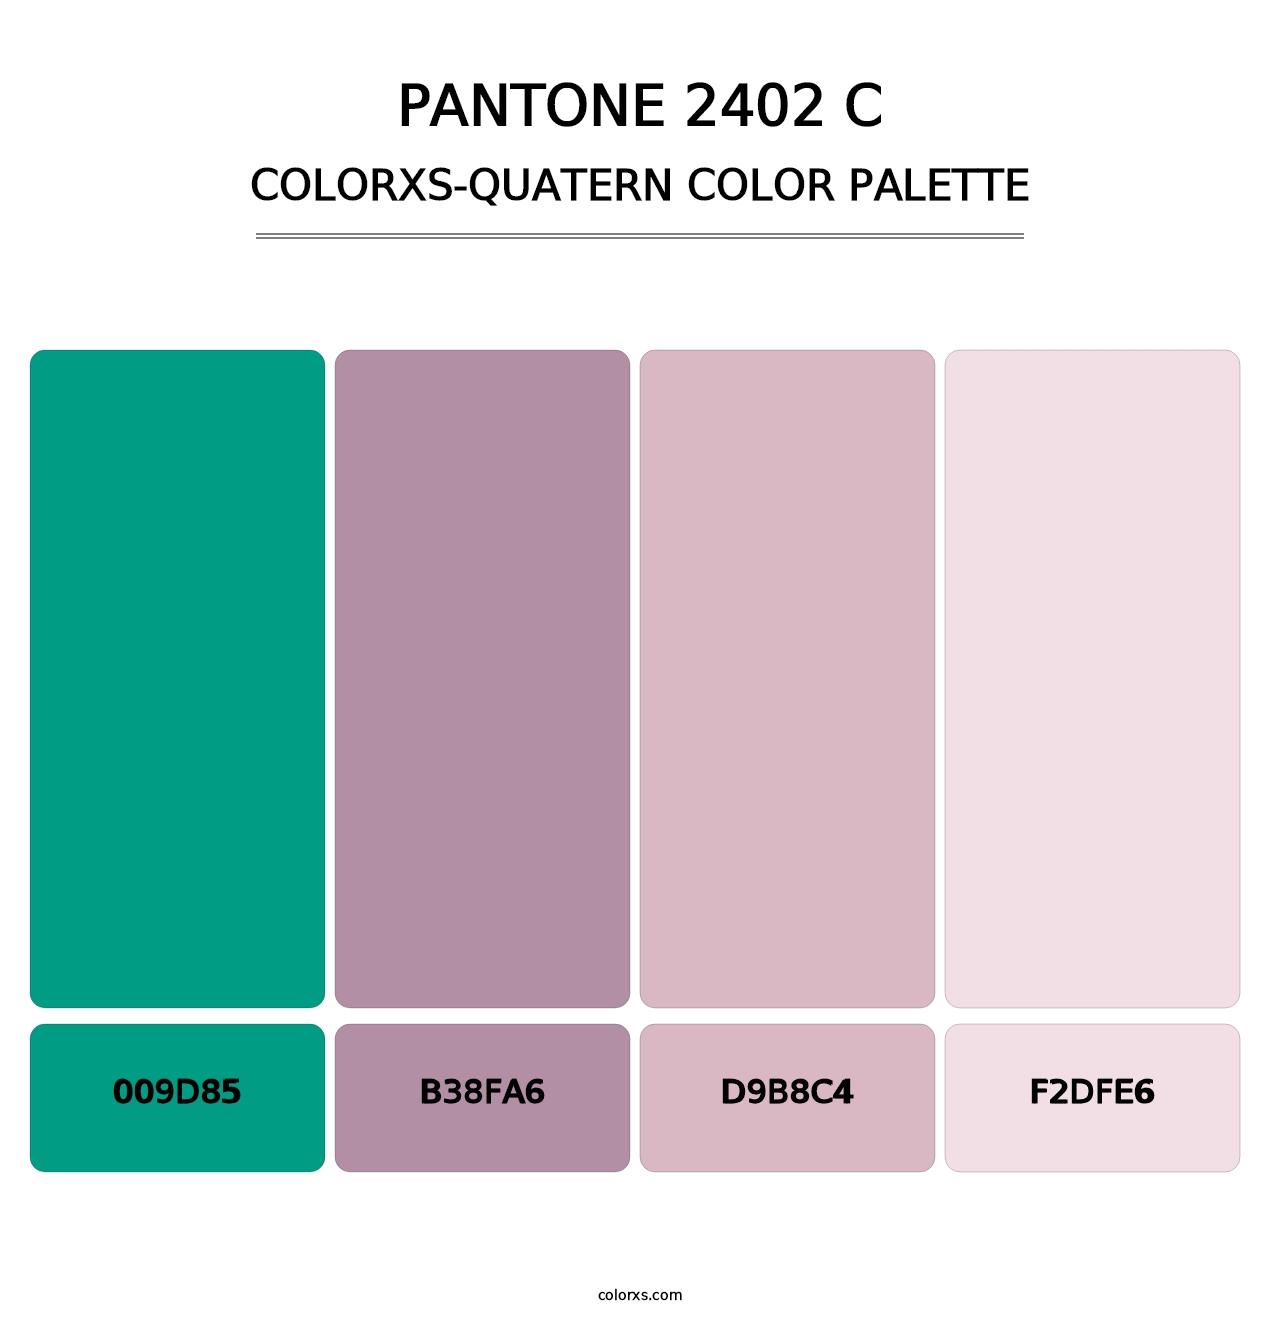 PANTONE 2402 C - Colorxs Quatern Palette